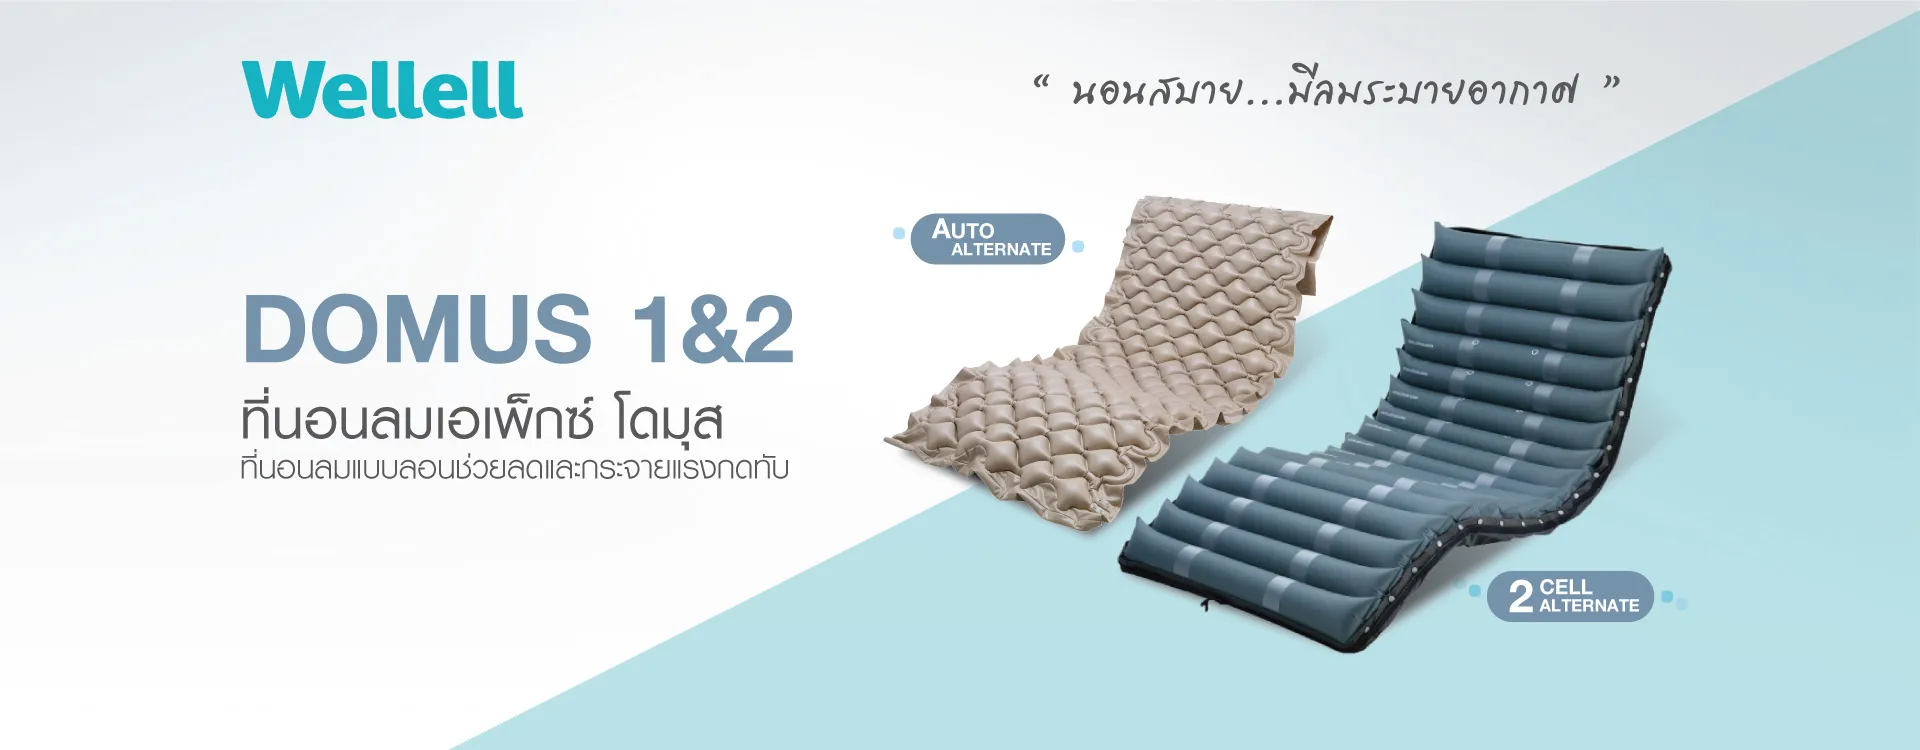 mattress-web-img8